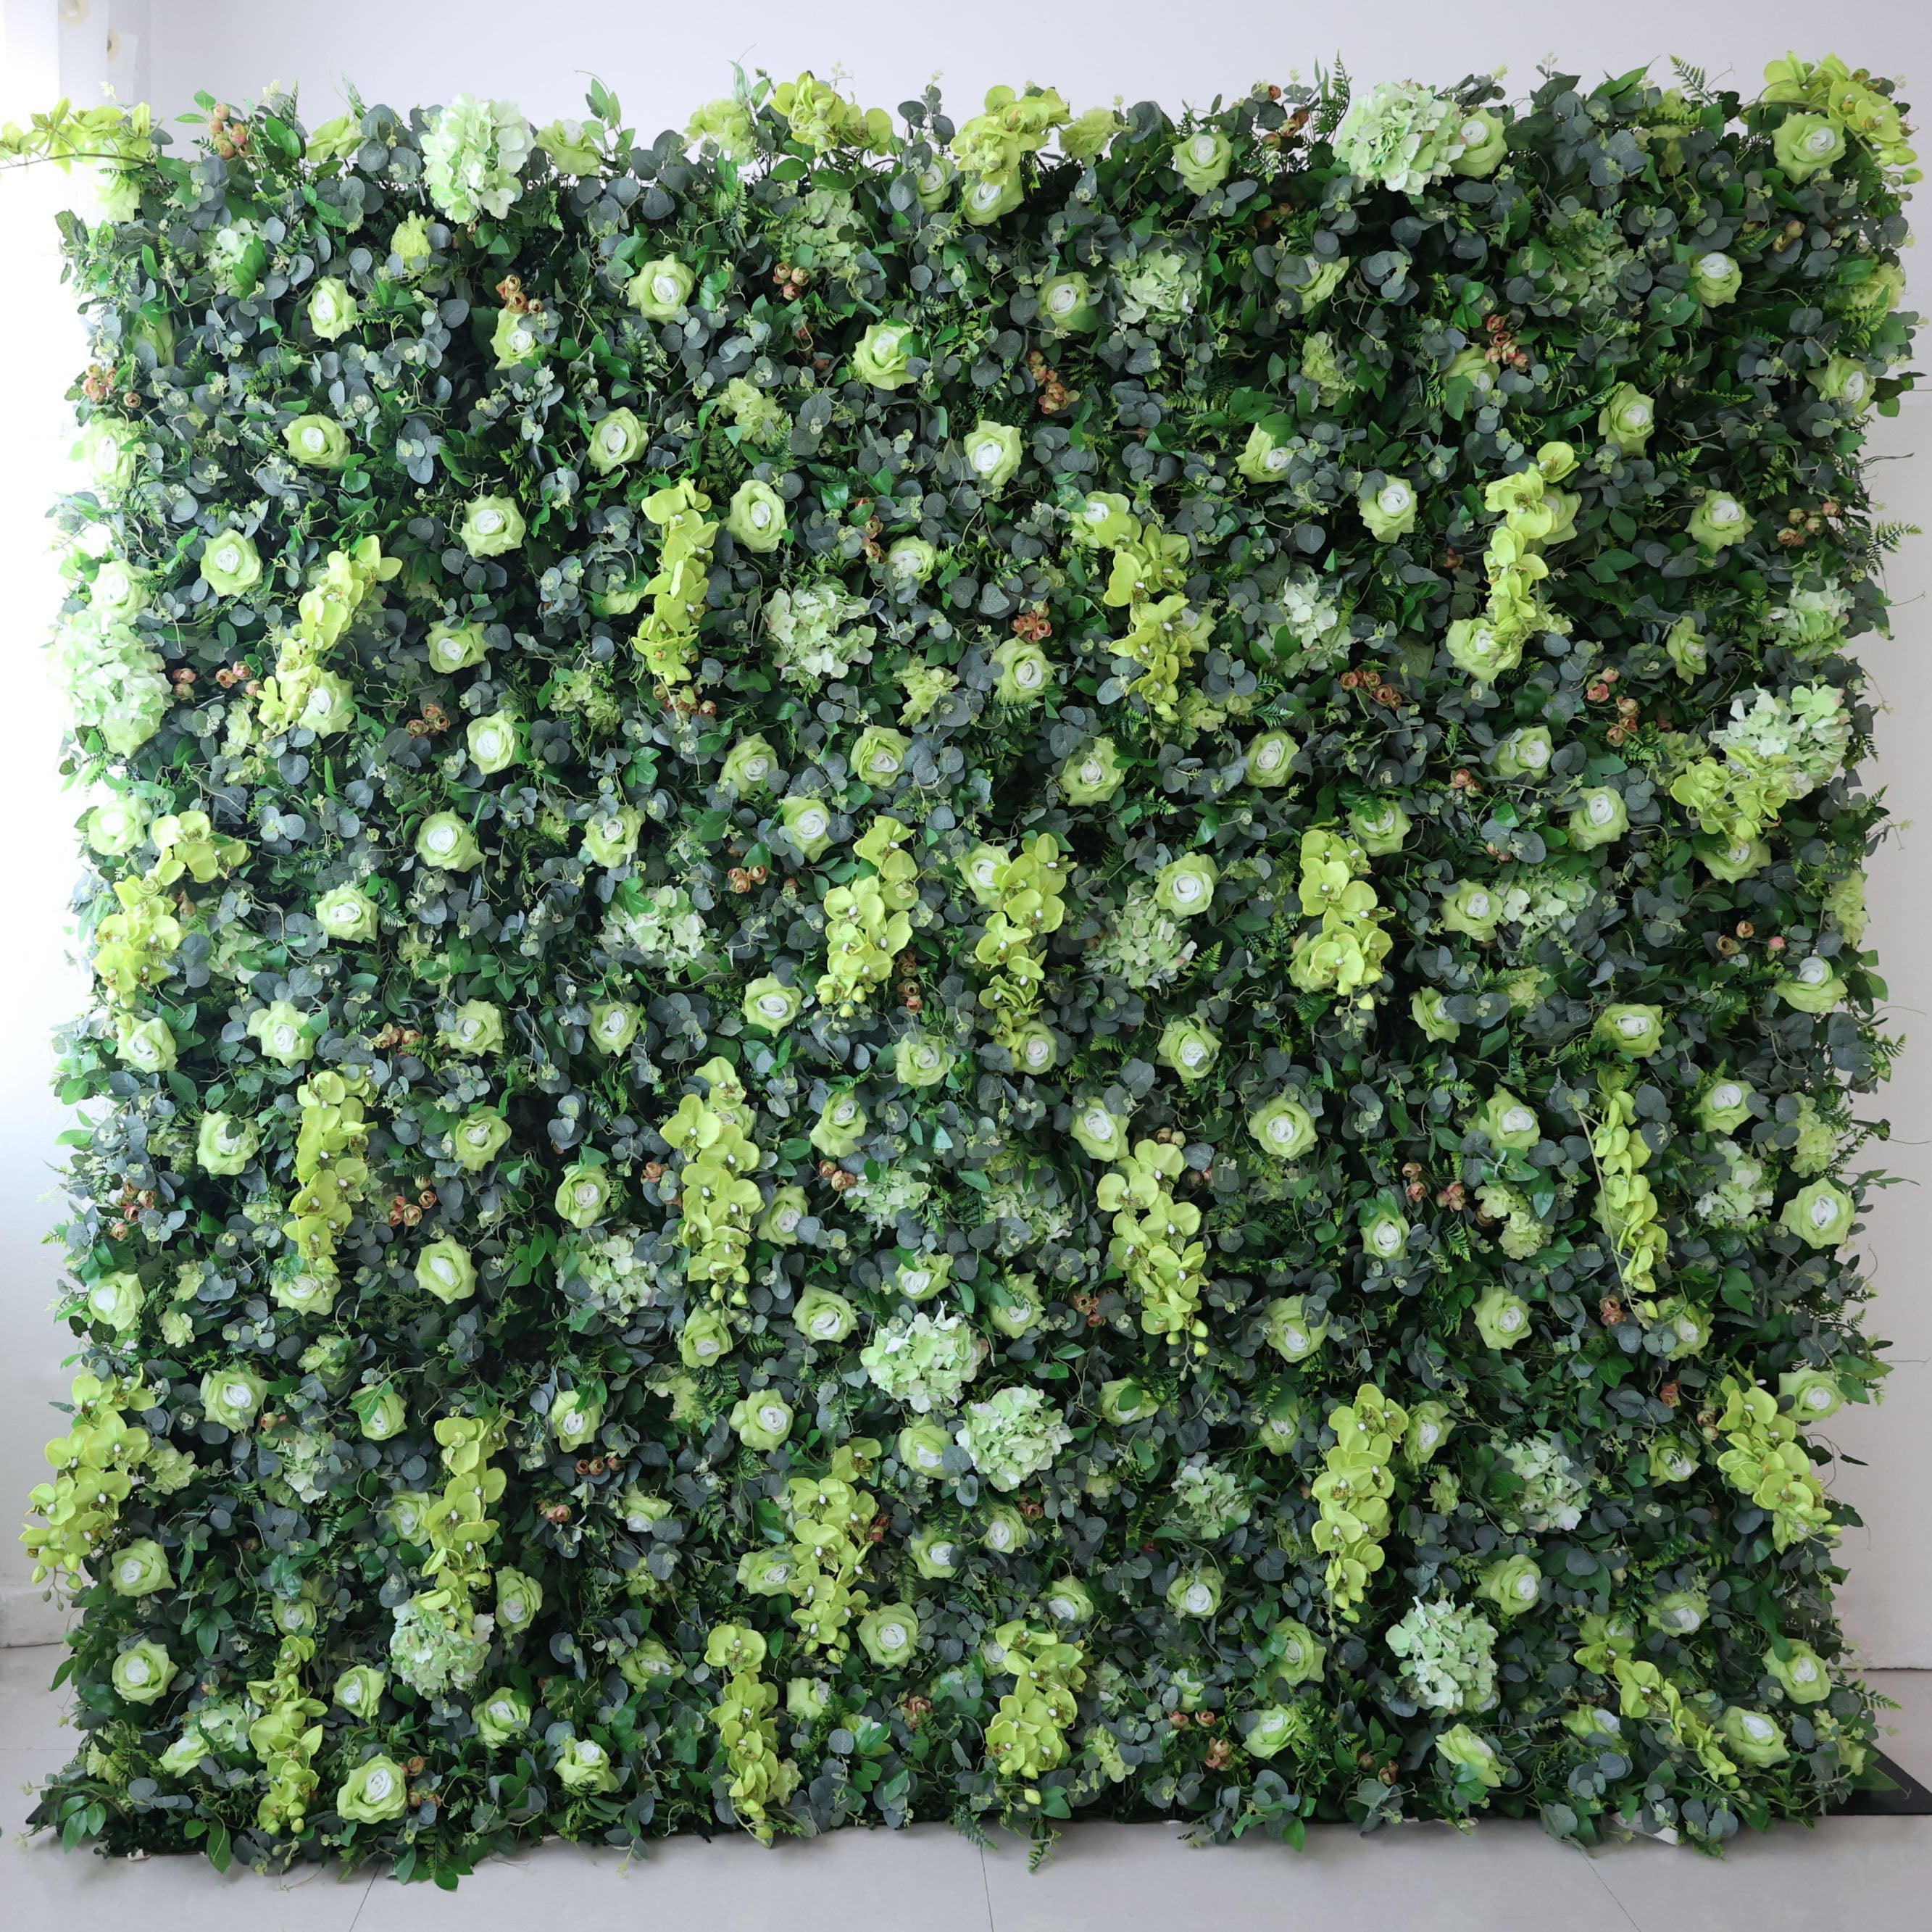 زهور فالار قماش لفافة أوراق خضراء صناعية خلفية جدار زفاف زهرة ، ديكور حفلات زهور ، حدث